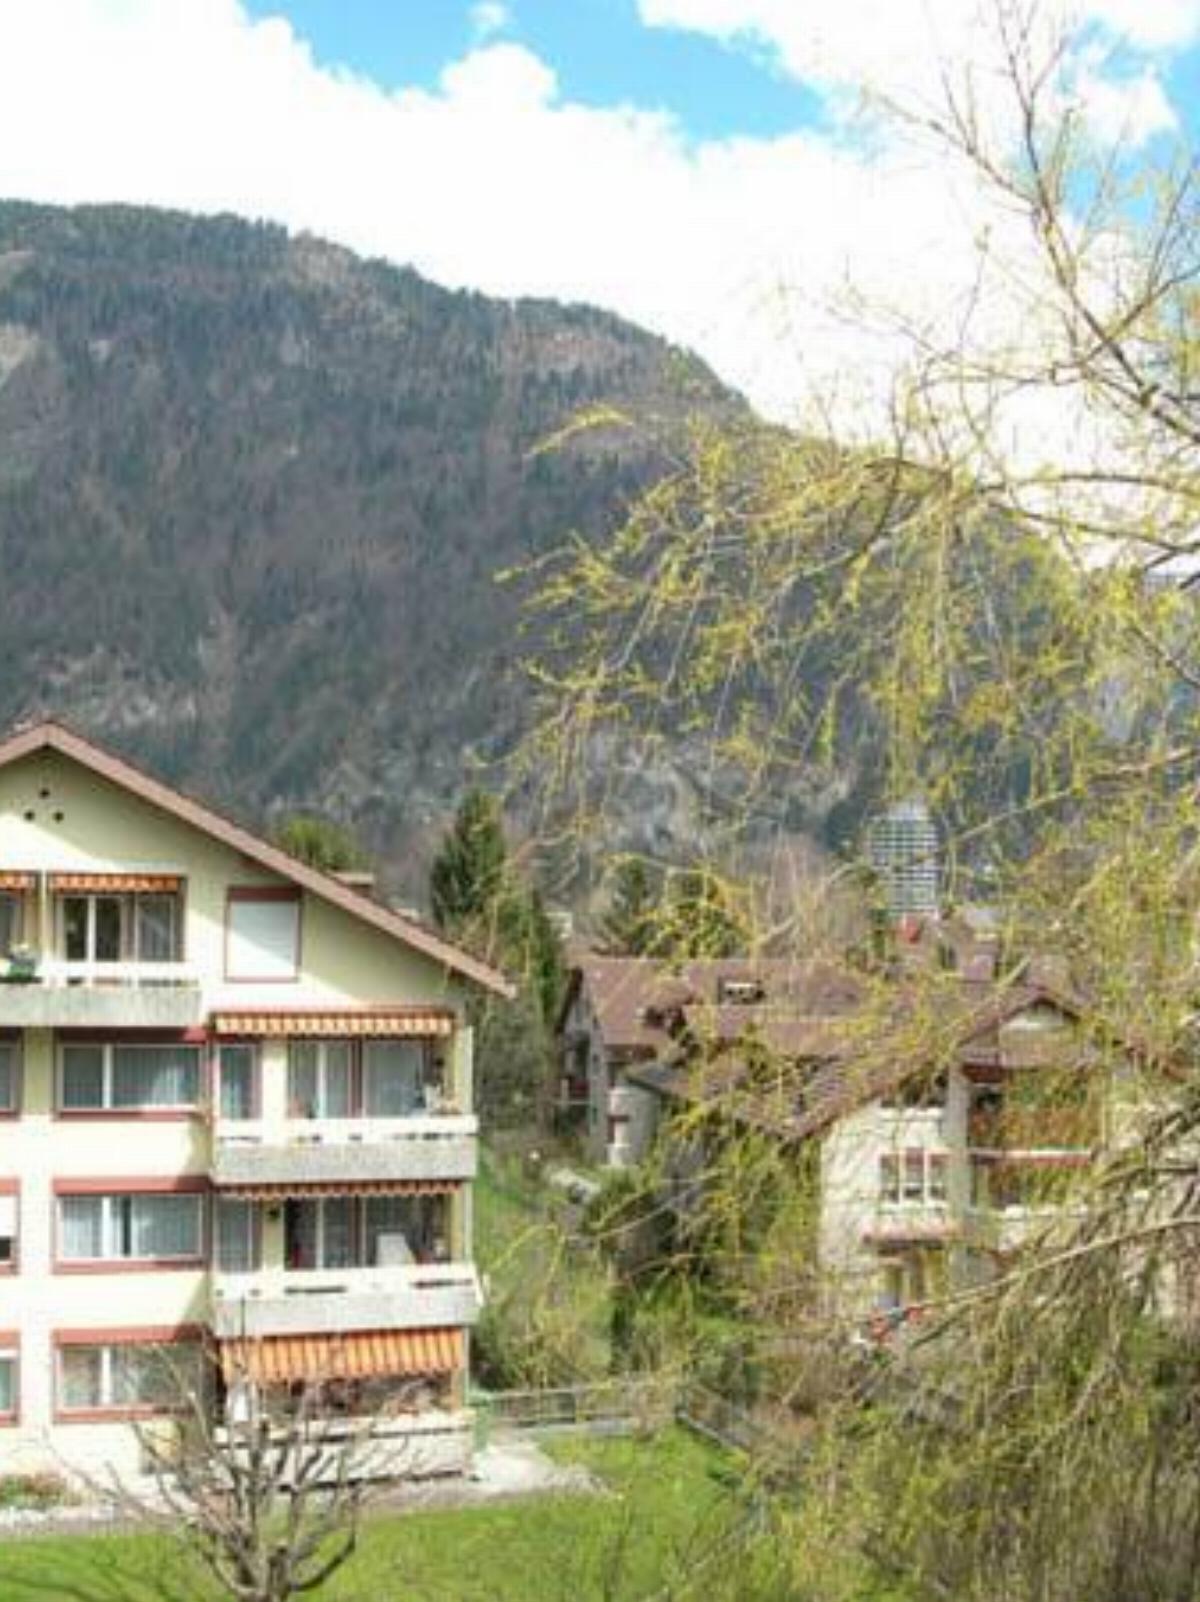 Apartments Dr. Med. Vet. Tempelman Hotel Interlaken Switzerland